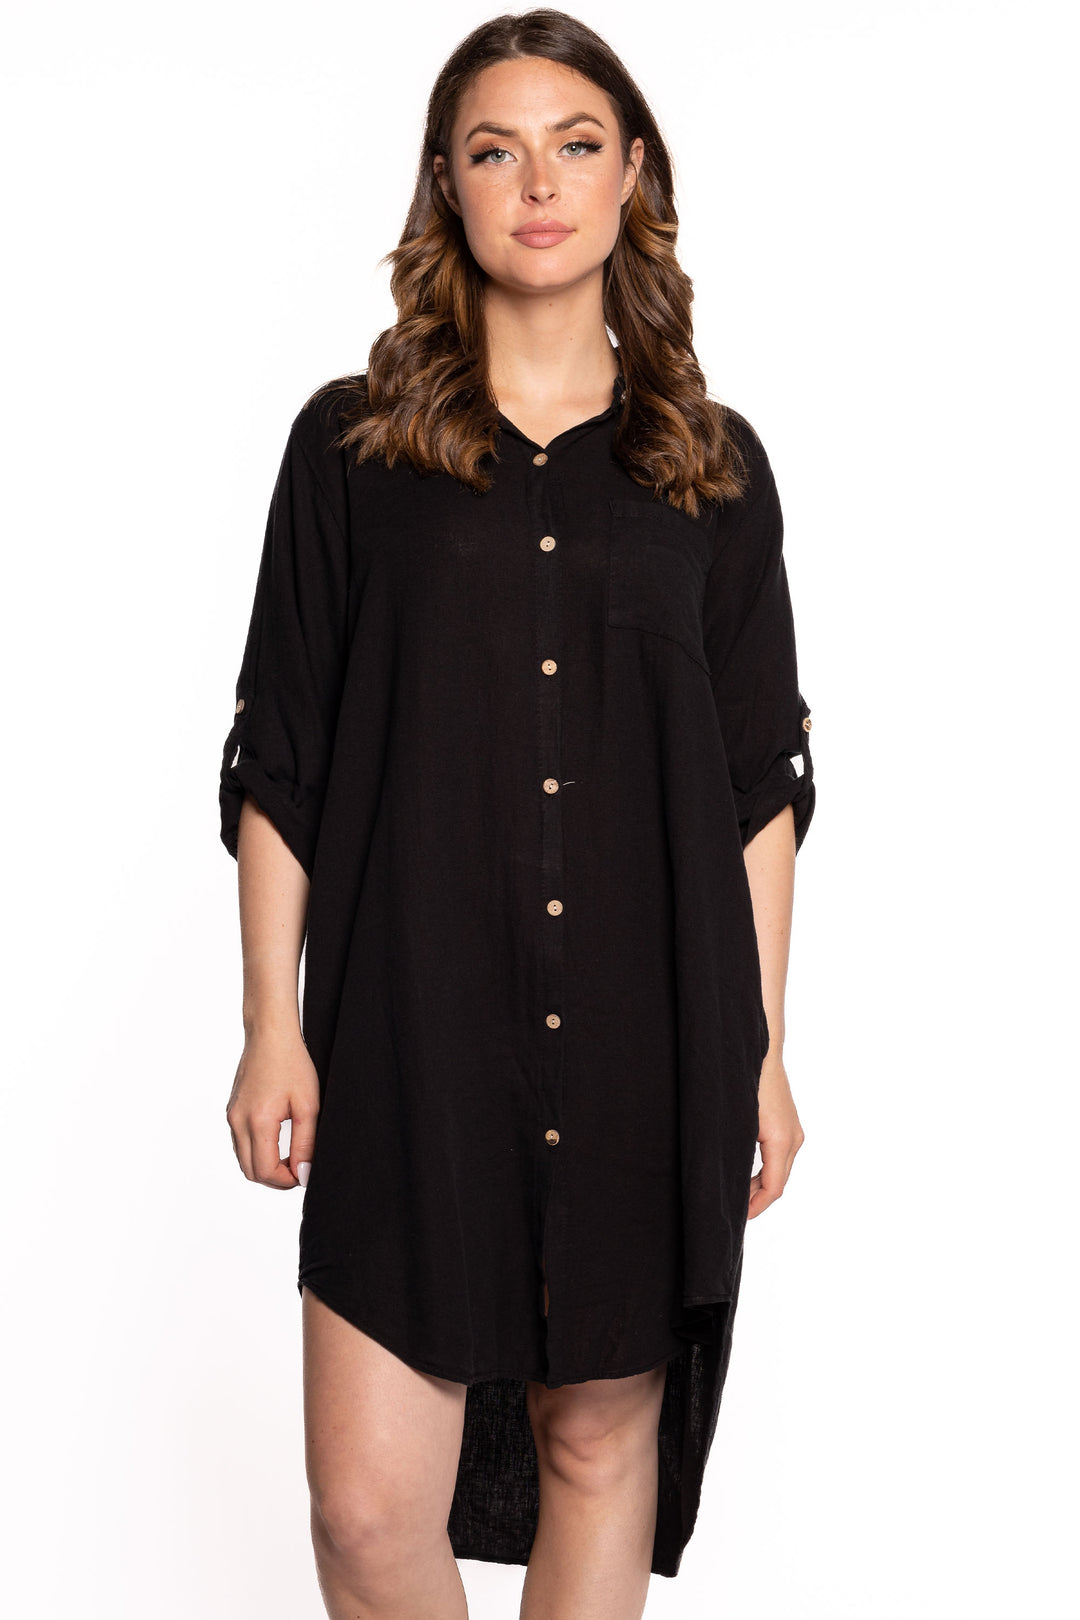 Etern Spring 2023 women's casual linen shirt dress with high-low hem - black